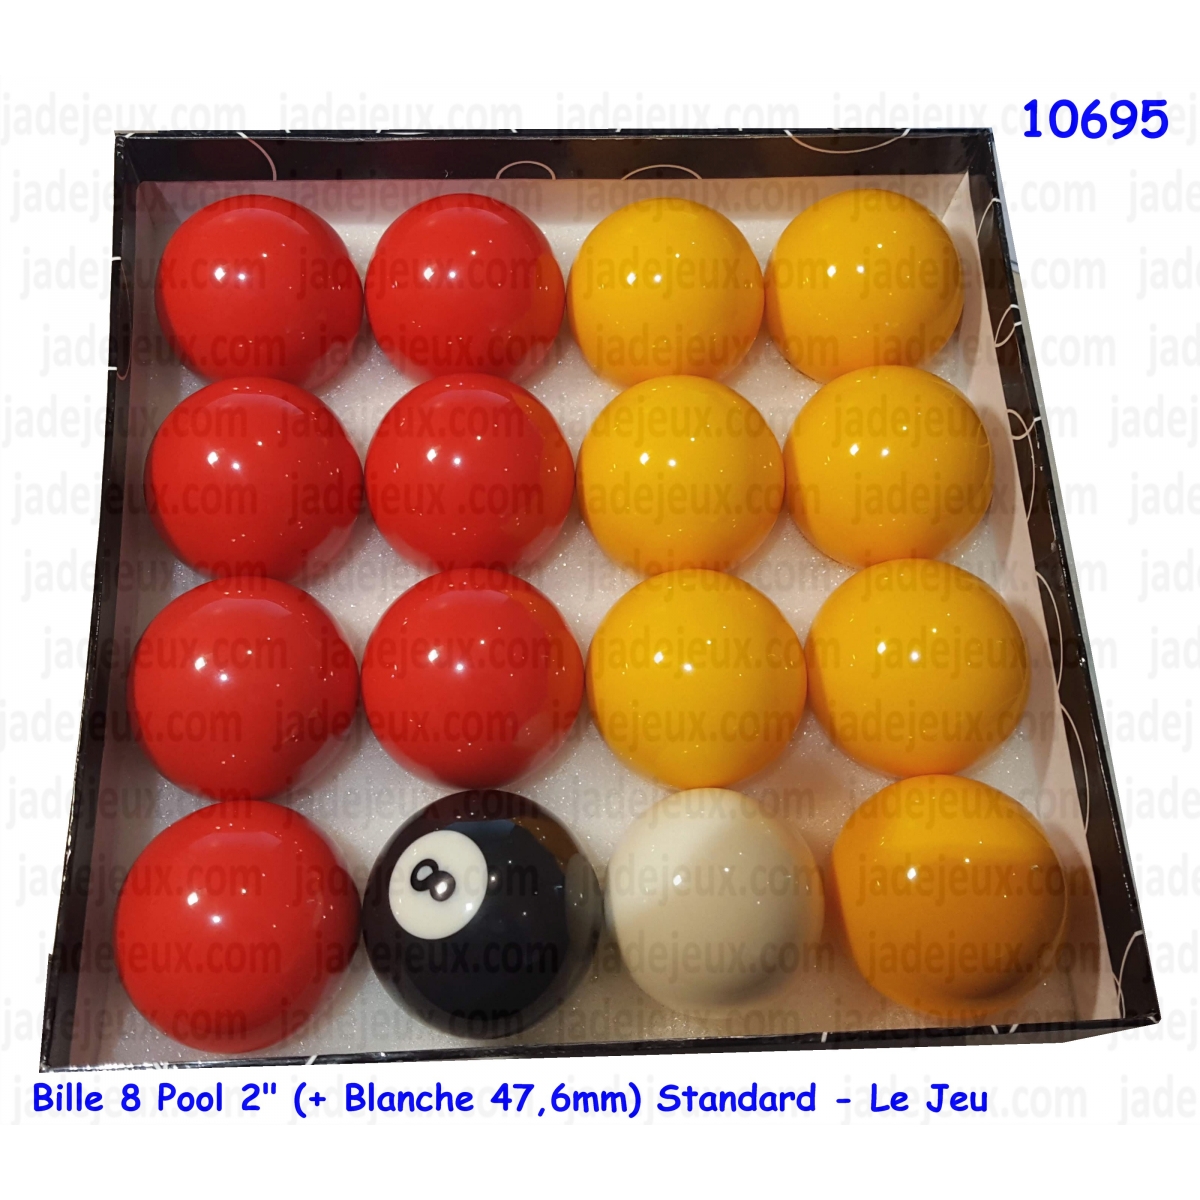 Billes / Boules de billard anglais 8 pool Standard 50.8mm